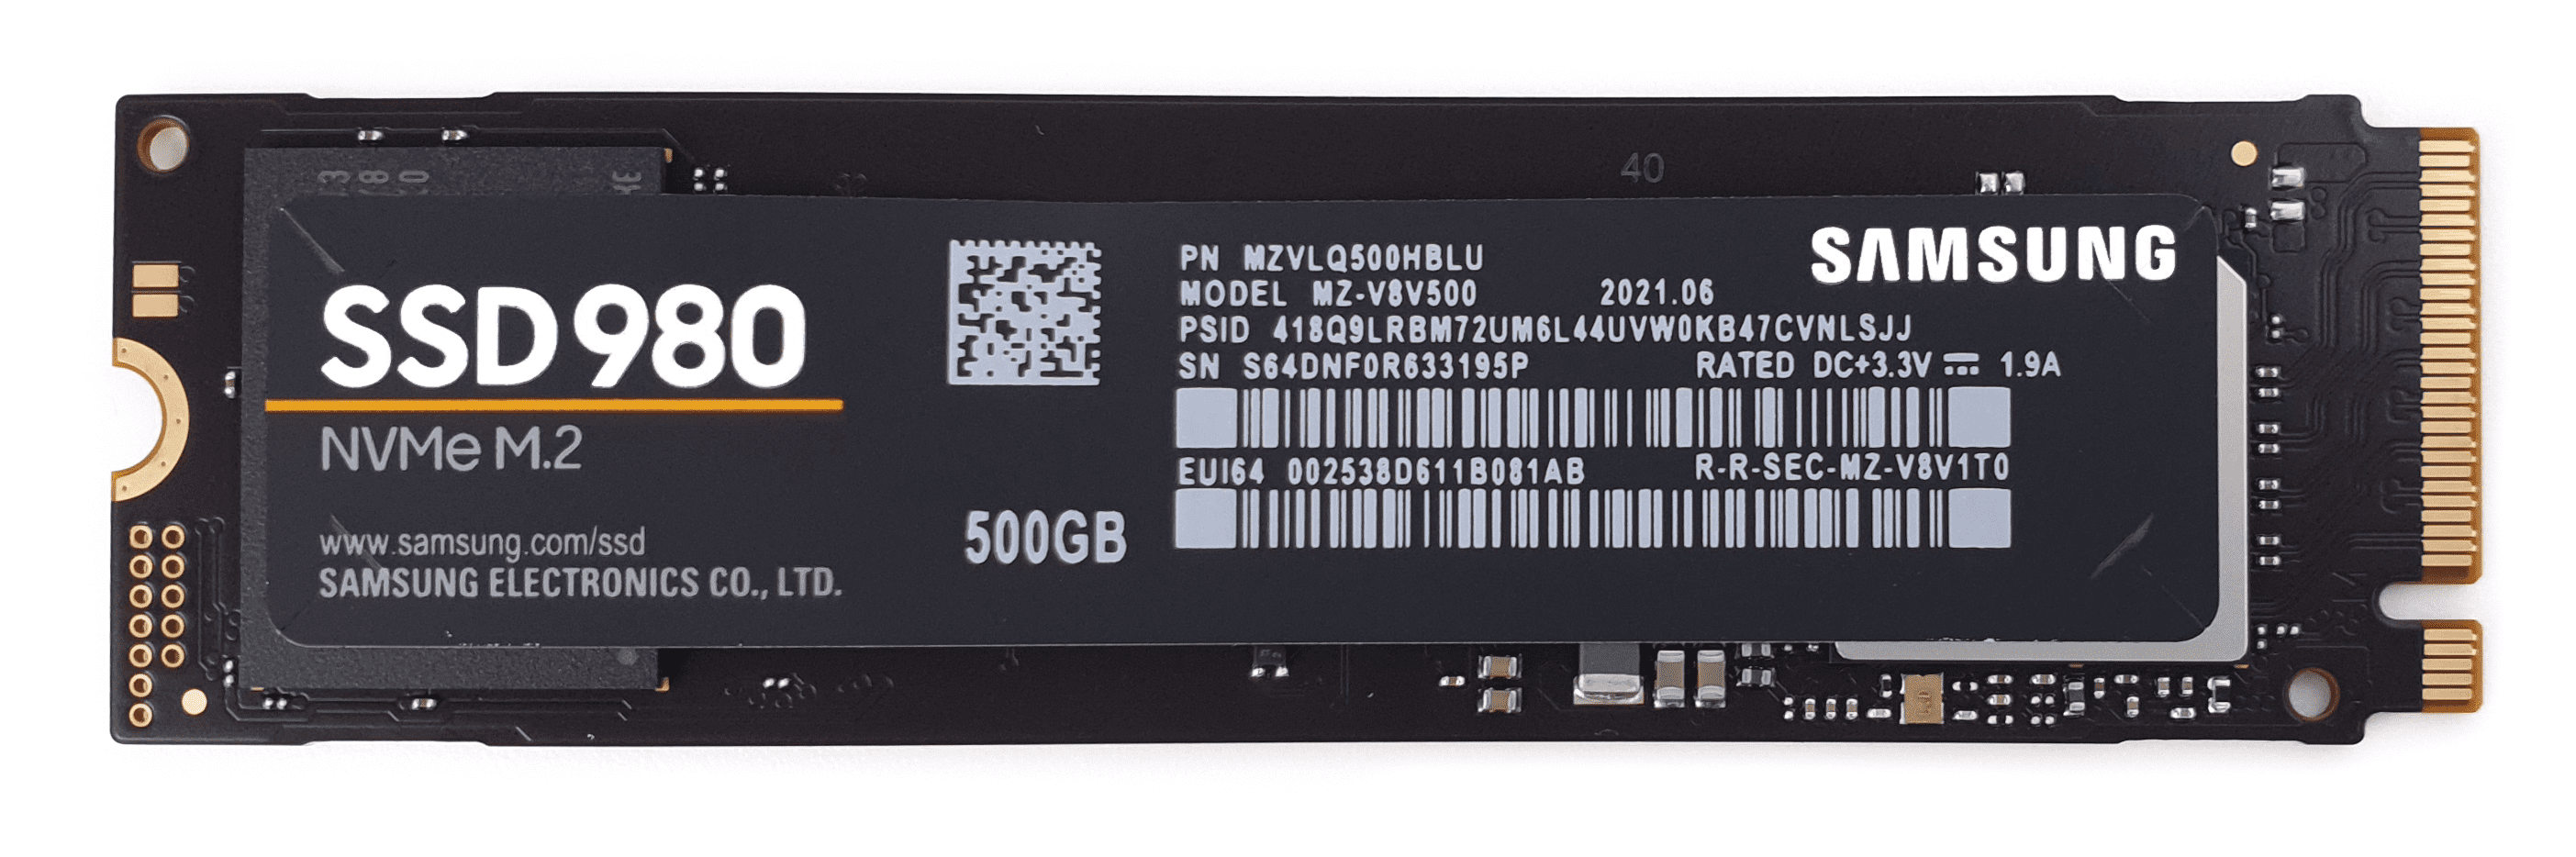 980 500gb. Samsung SSD 980. Samsung NVME 980 500gb. Samsung SSD 980 500gb. M.2 накопитель Samsung 980.